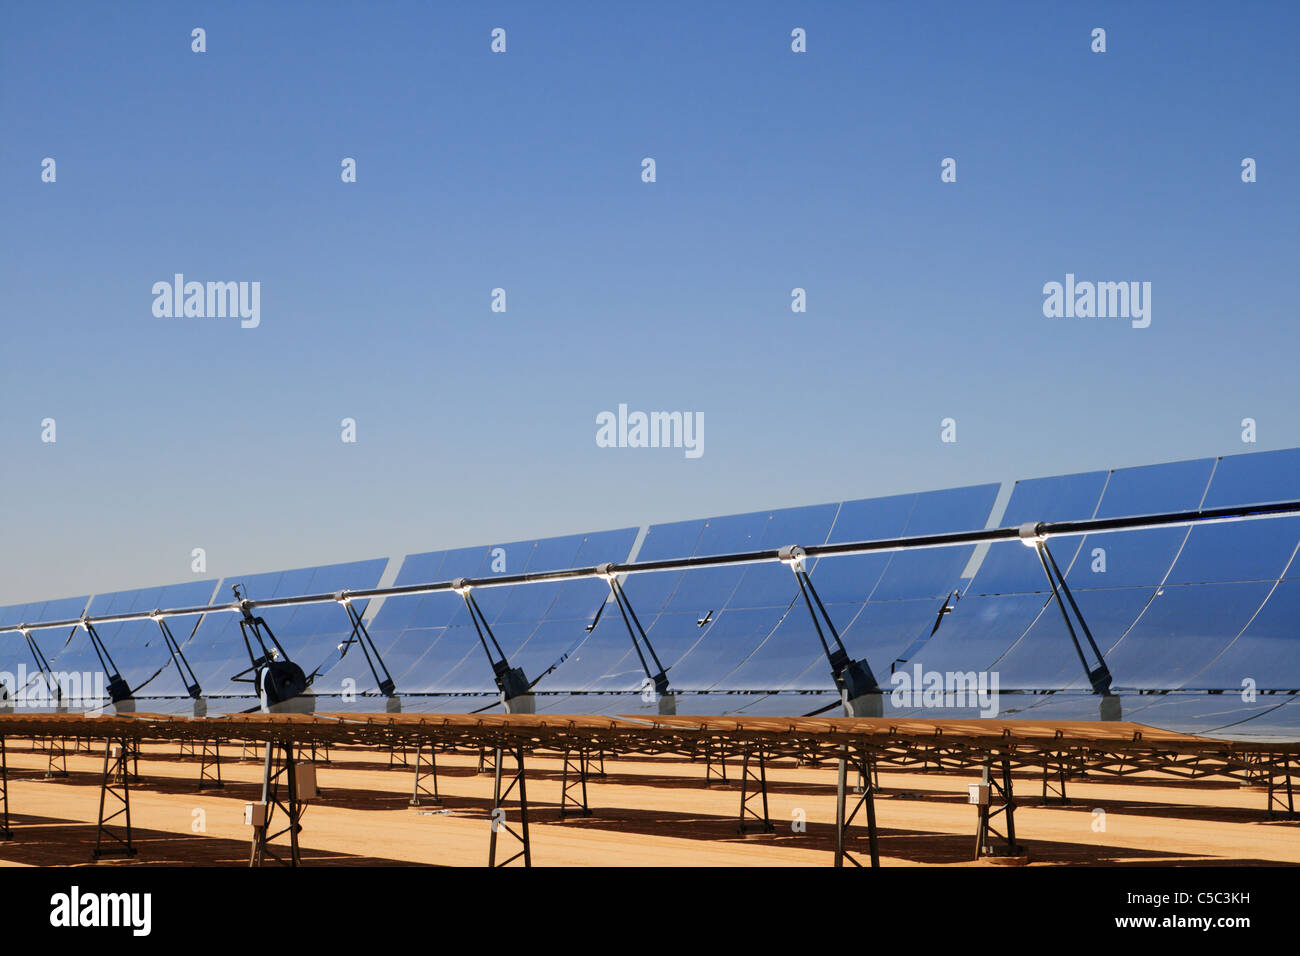 Espejos parabólicos de la estación generadora de energía solar (segs) instalación eléctrica de energía solar térmica en el desierto de Mojave Foto de stock